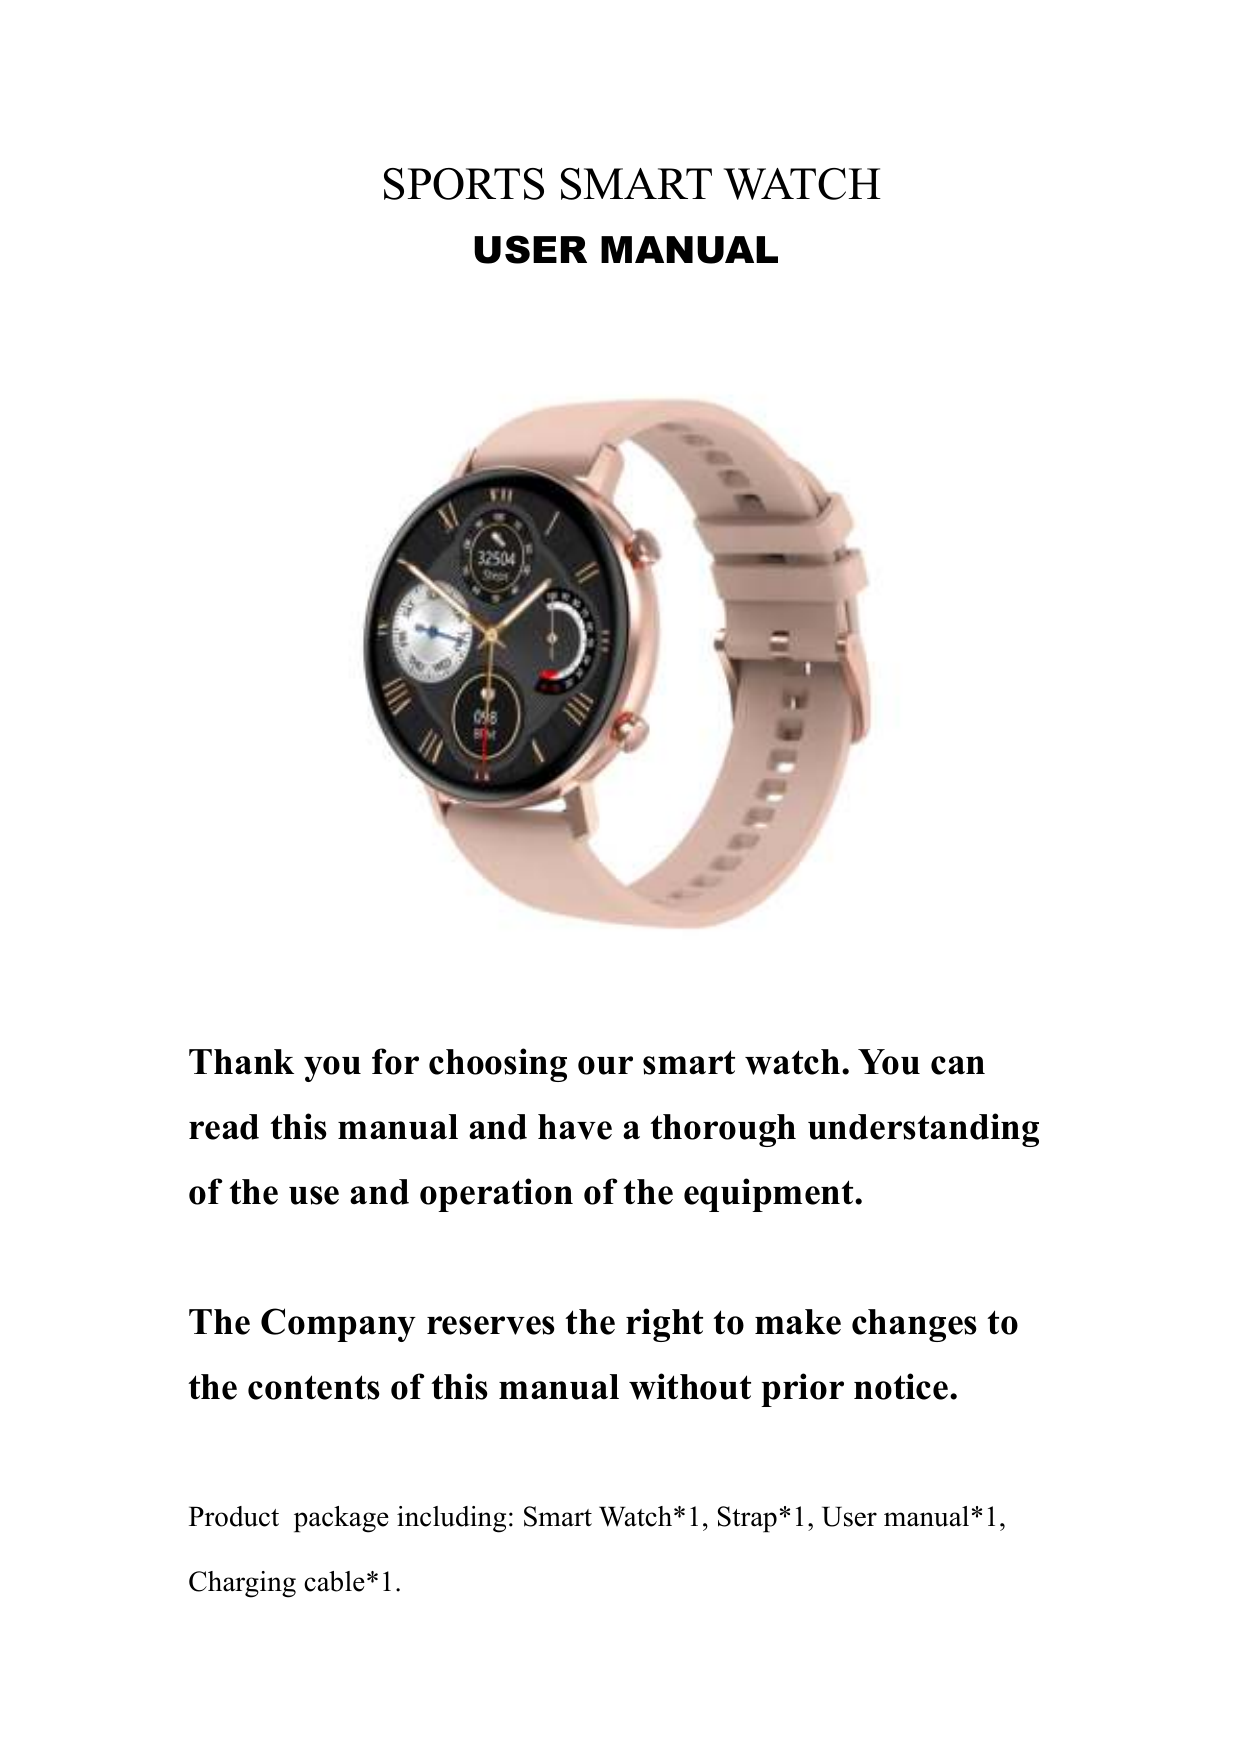 Инструкция по смарт часам watch. Смарт часы SMARTWATCH manual. Умные часы fk99 Smart watch user's manual. Смарт часы 129 user manual. Смарт часы Smart watch user manual.